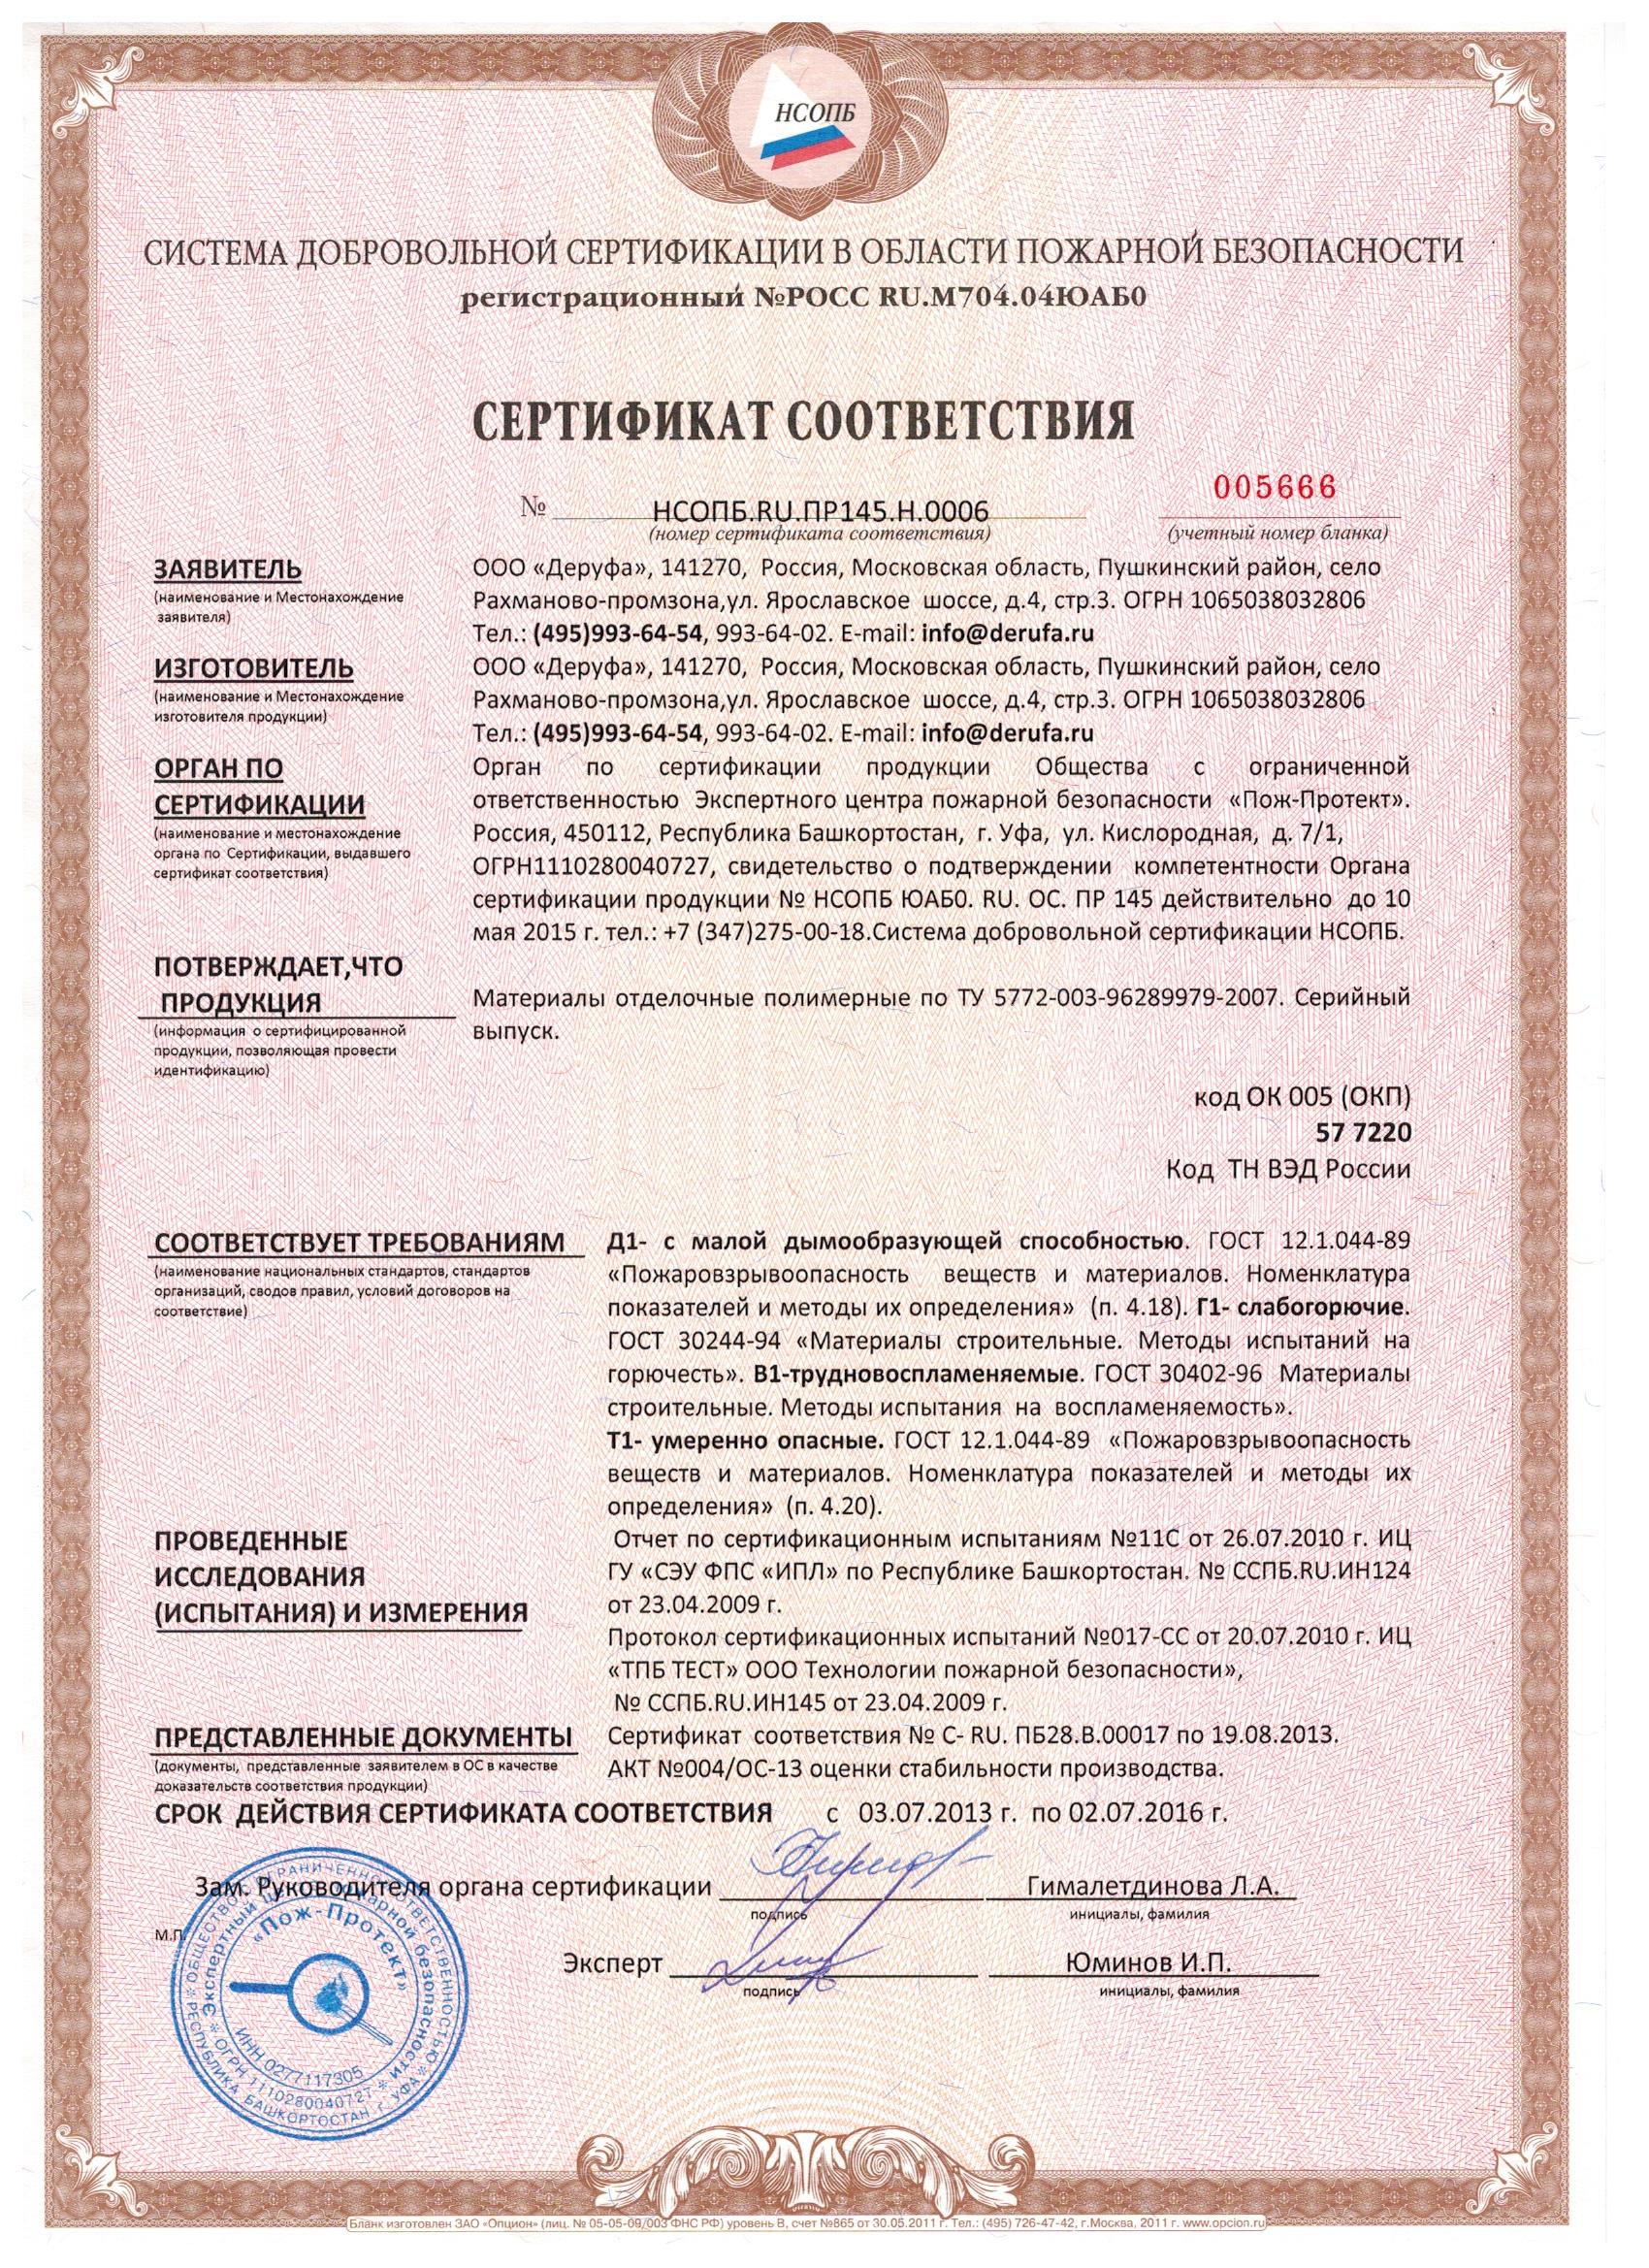 Сертификат пожарной безопасности на материалы